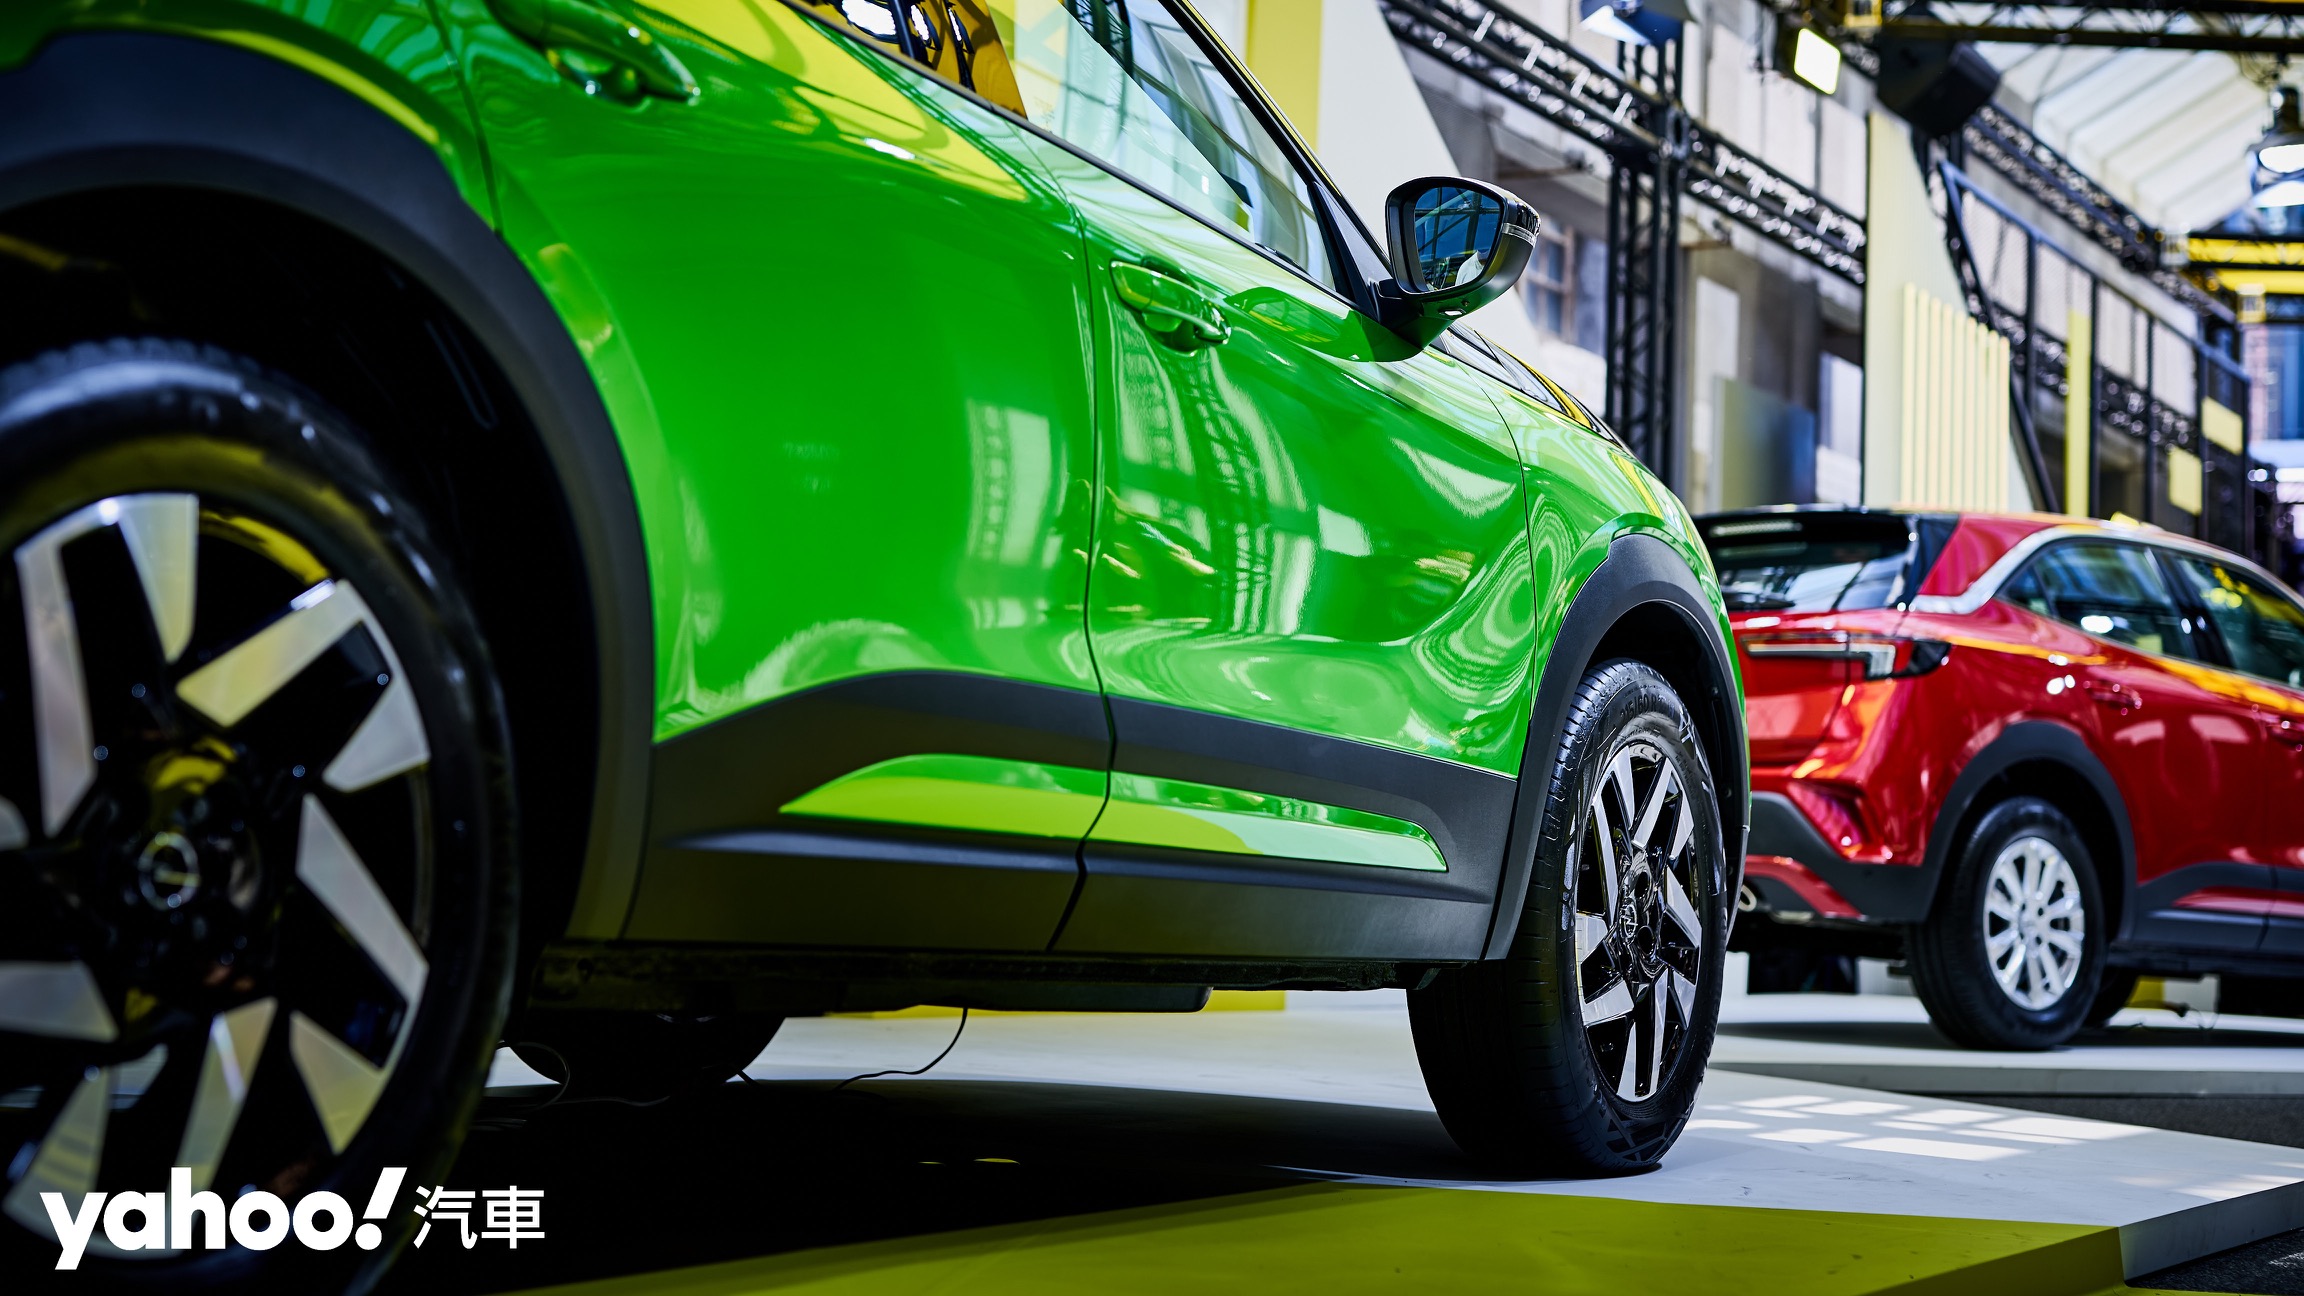 燃油雙車型分別以16吋與17吋輪圈提供不同車款風格及行駛感受。